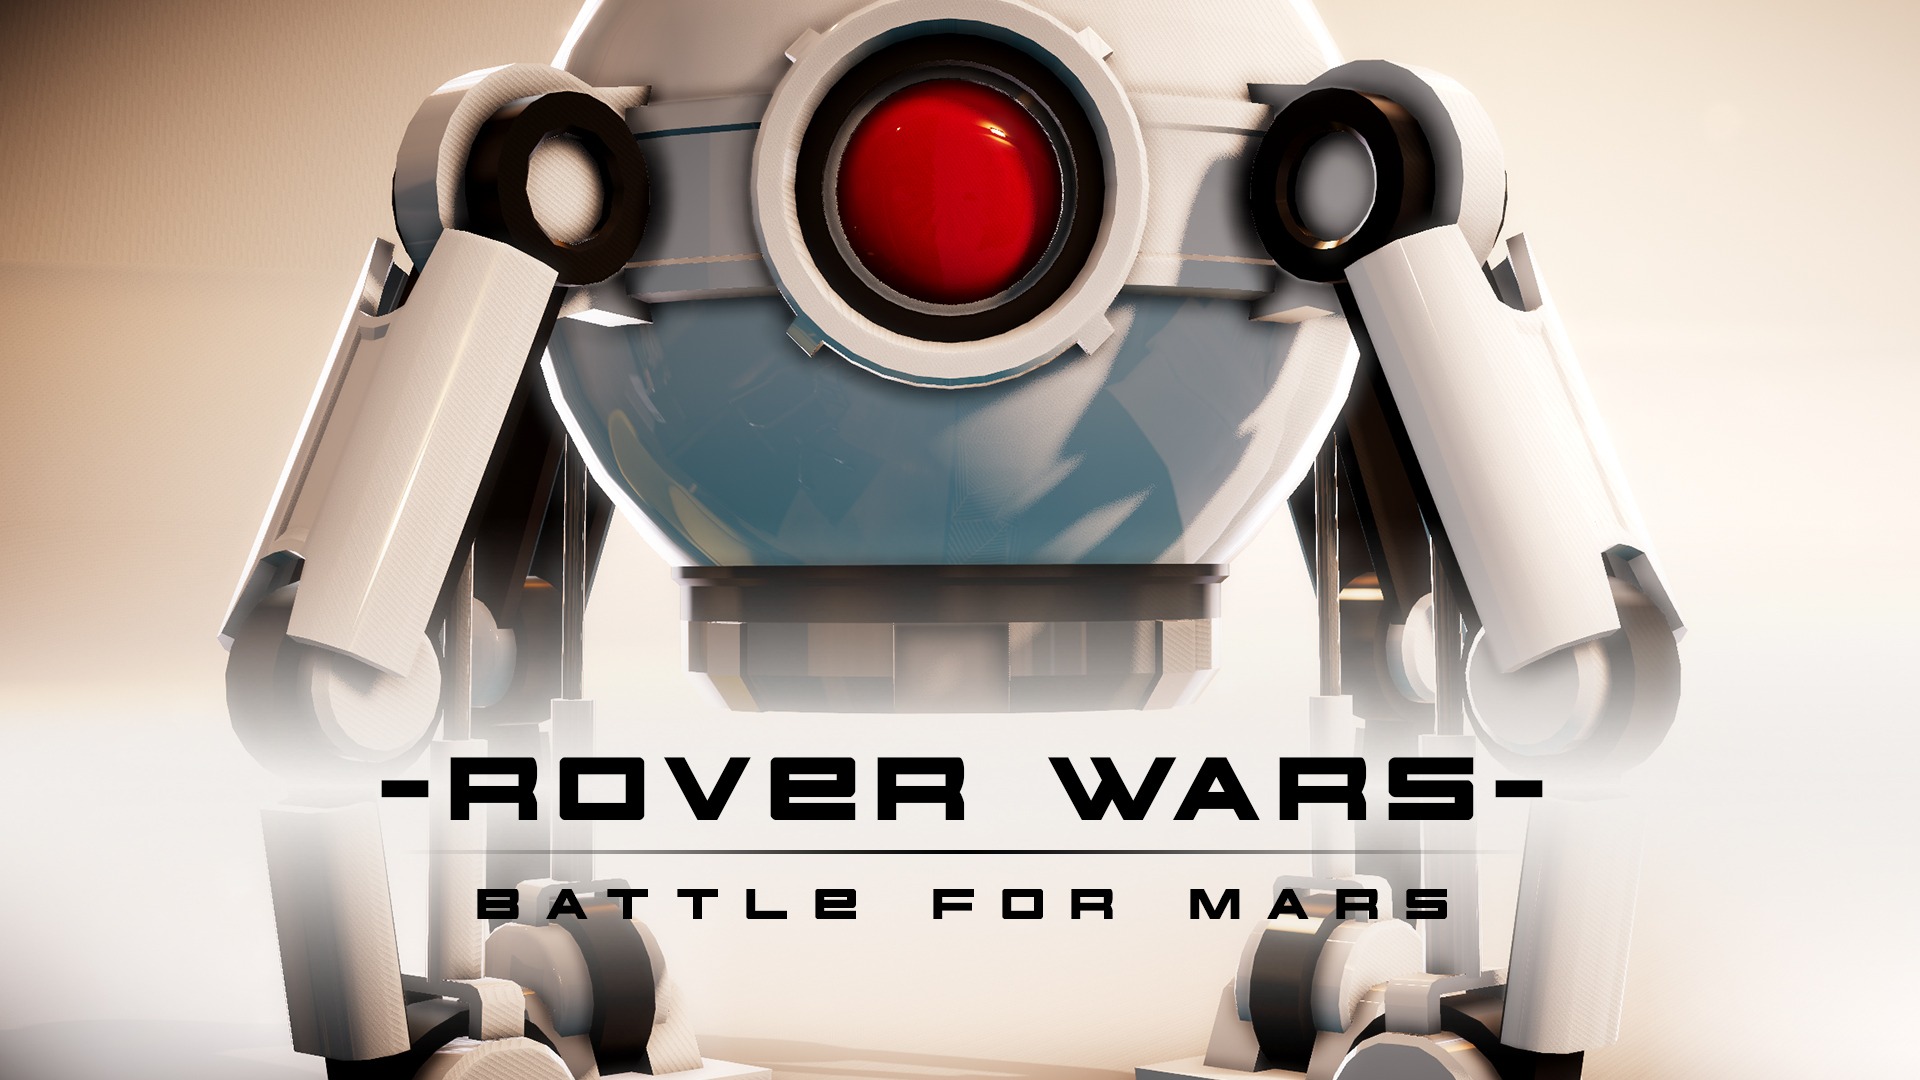 TEST Rover Wars XWFR